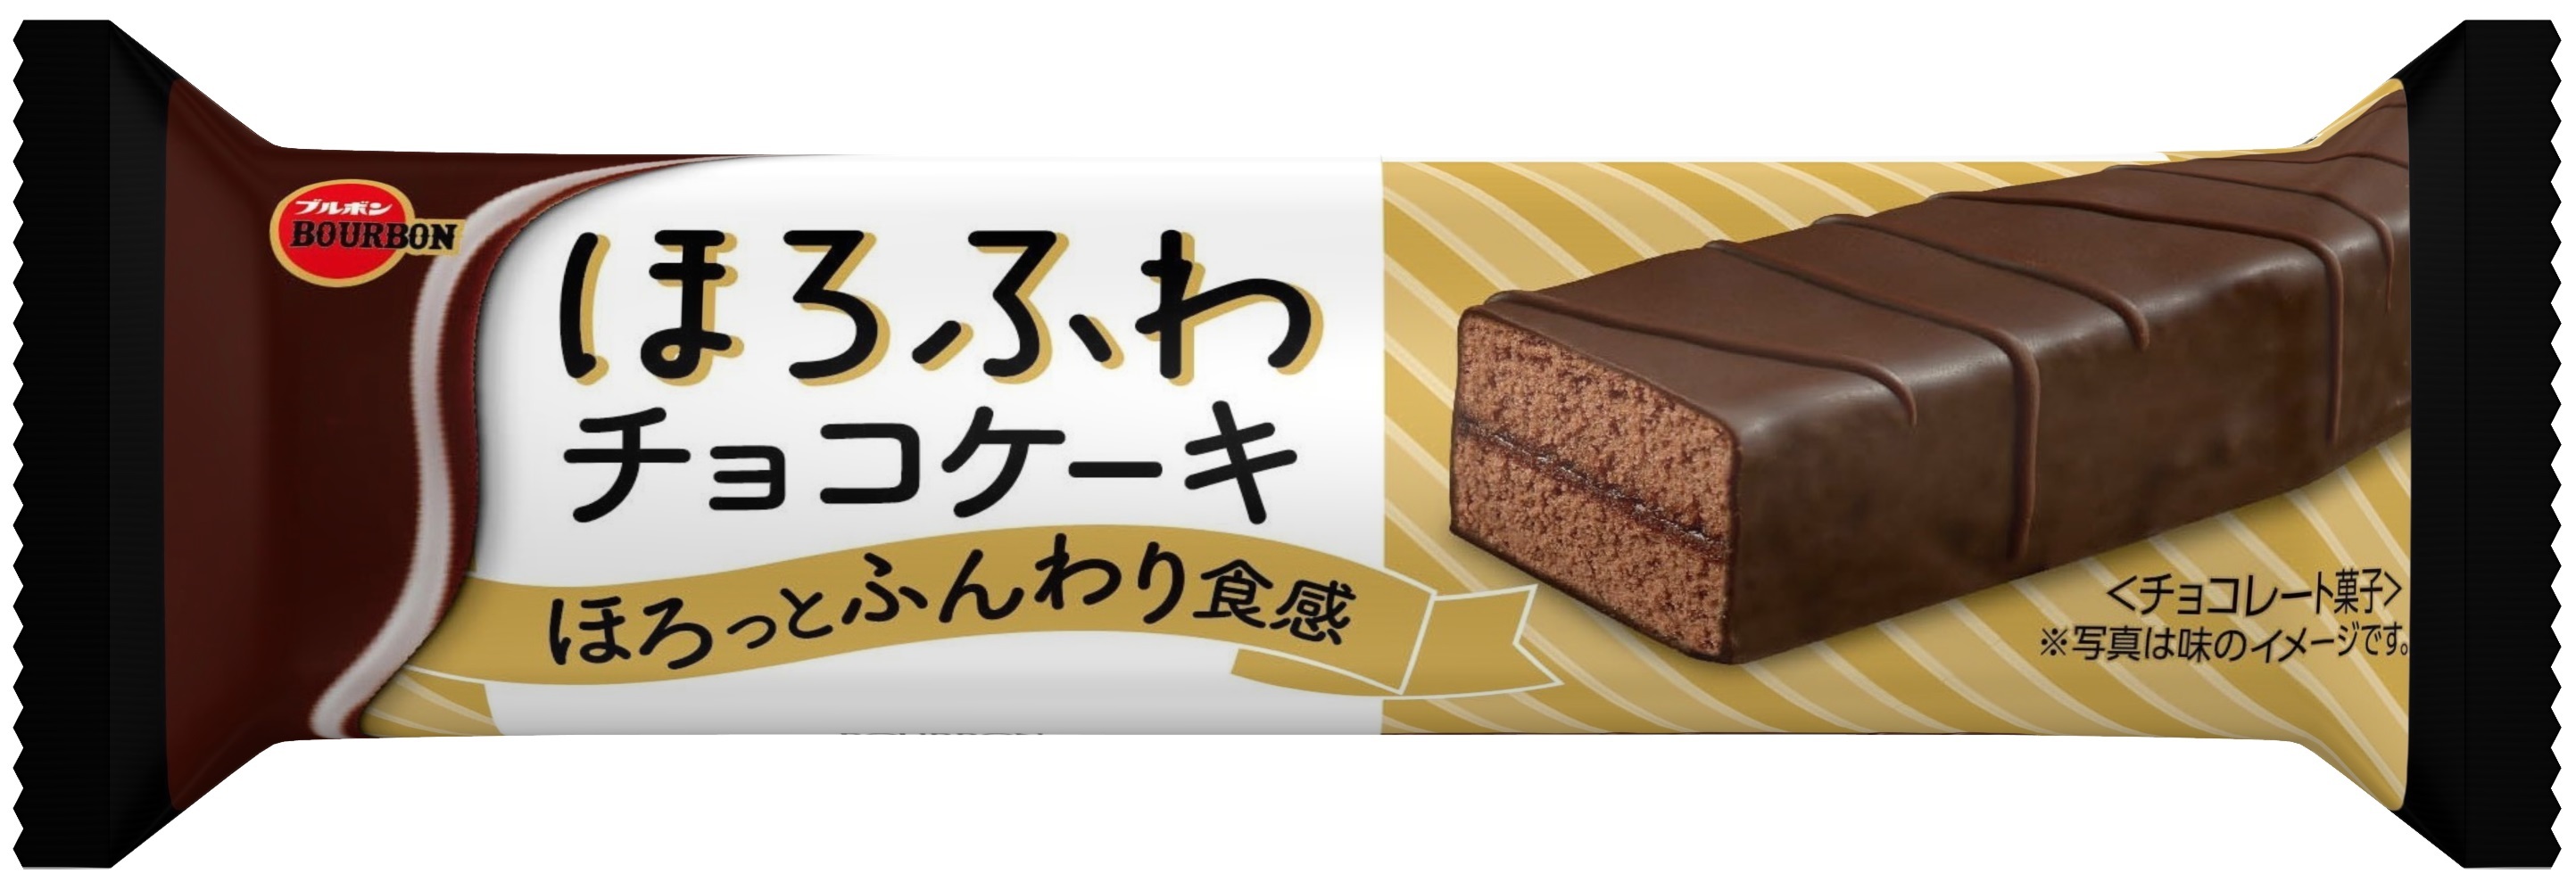 ブルボン 食べきりサイズのバータイプスイーツに ほろふわチョコケーキ が10月6日 火 に新登場 Sankeibiz サンケイビズ 自分を磨く経済情報サイト